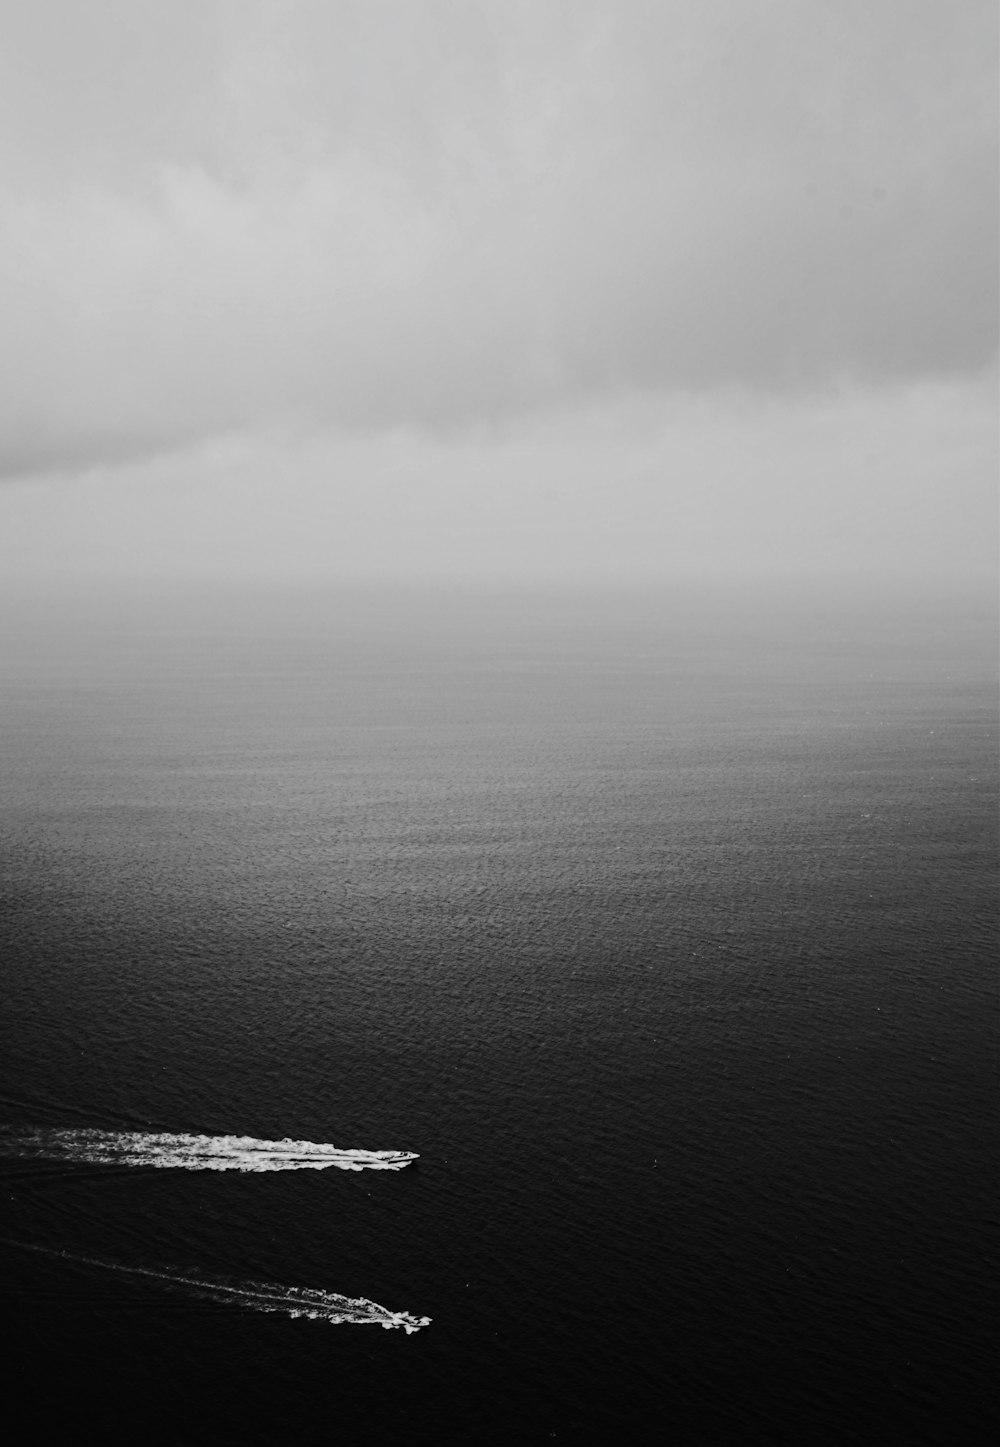 Photographie en niveaux de gris de deux bateaux sur un plan d’eau